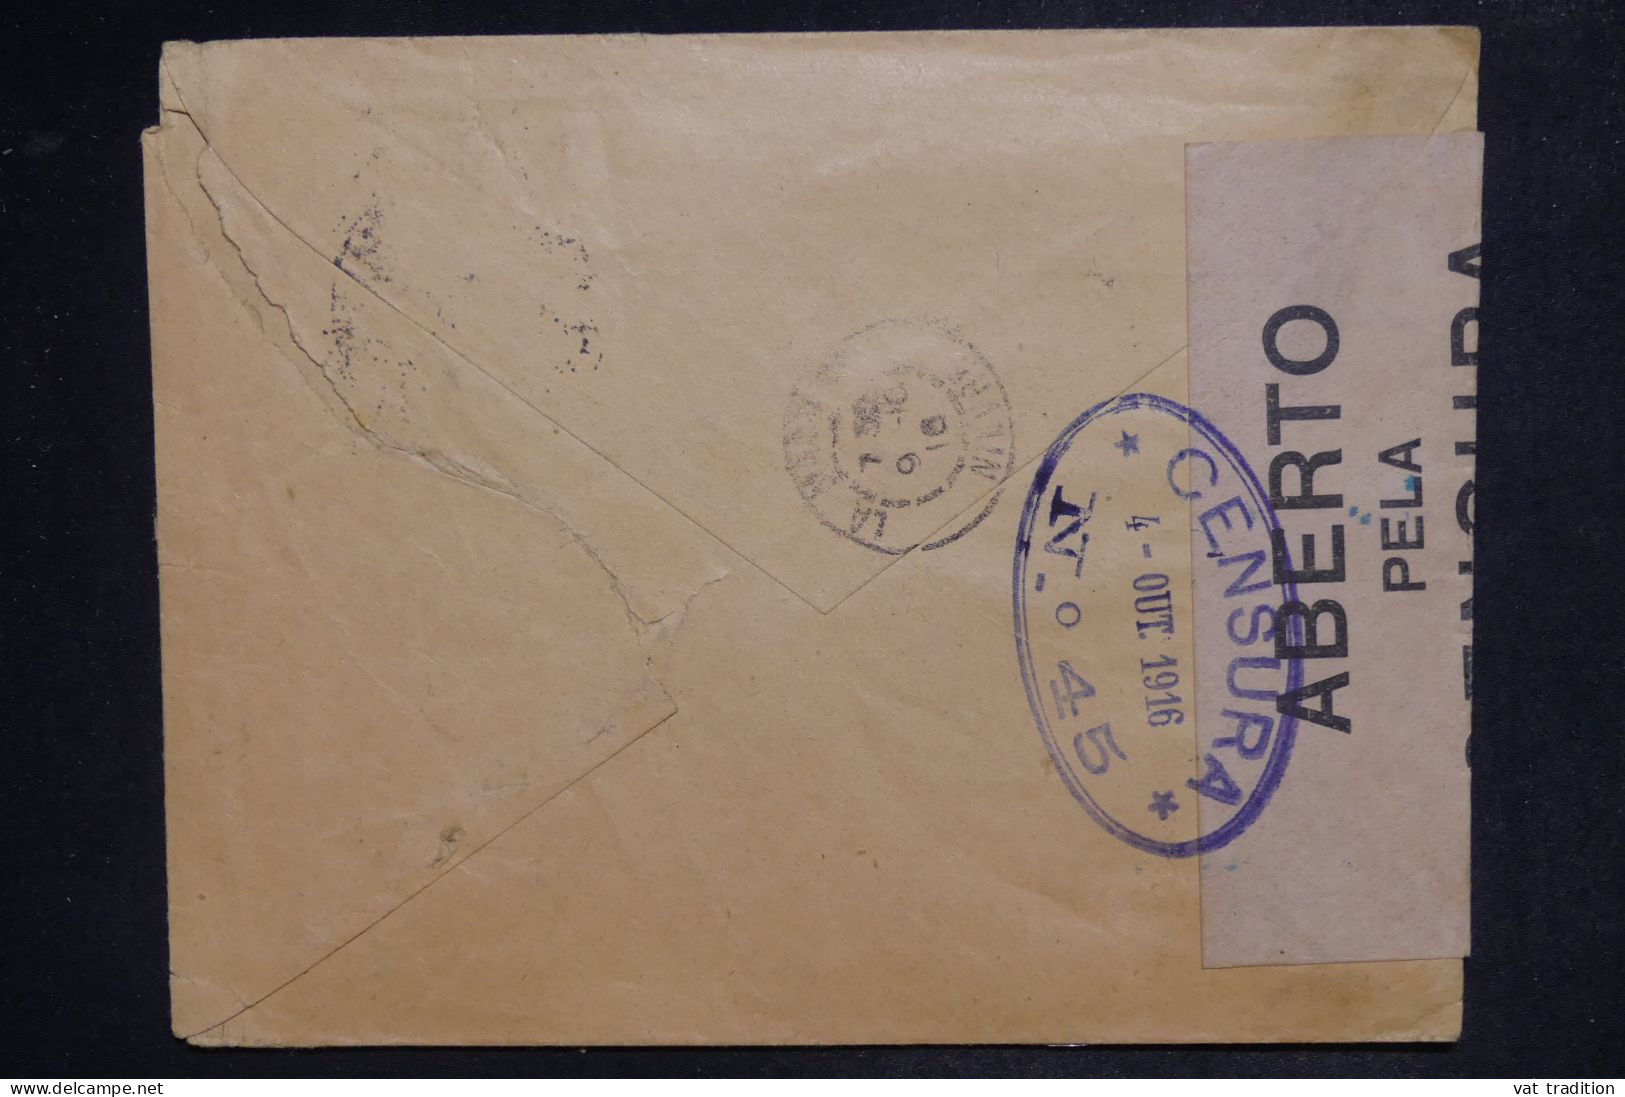 PORTUGAL - Enveloppe Commerciale De Lisbonne Pour La France En 1916 Avec Contrôle Postal - L 151887 - Cartas & Documentos